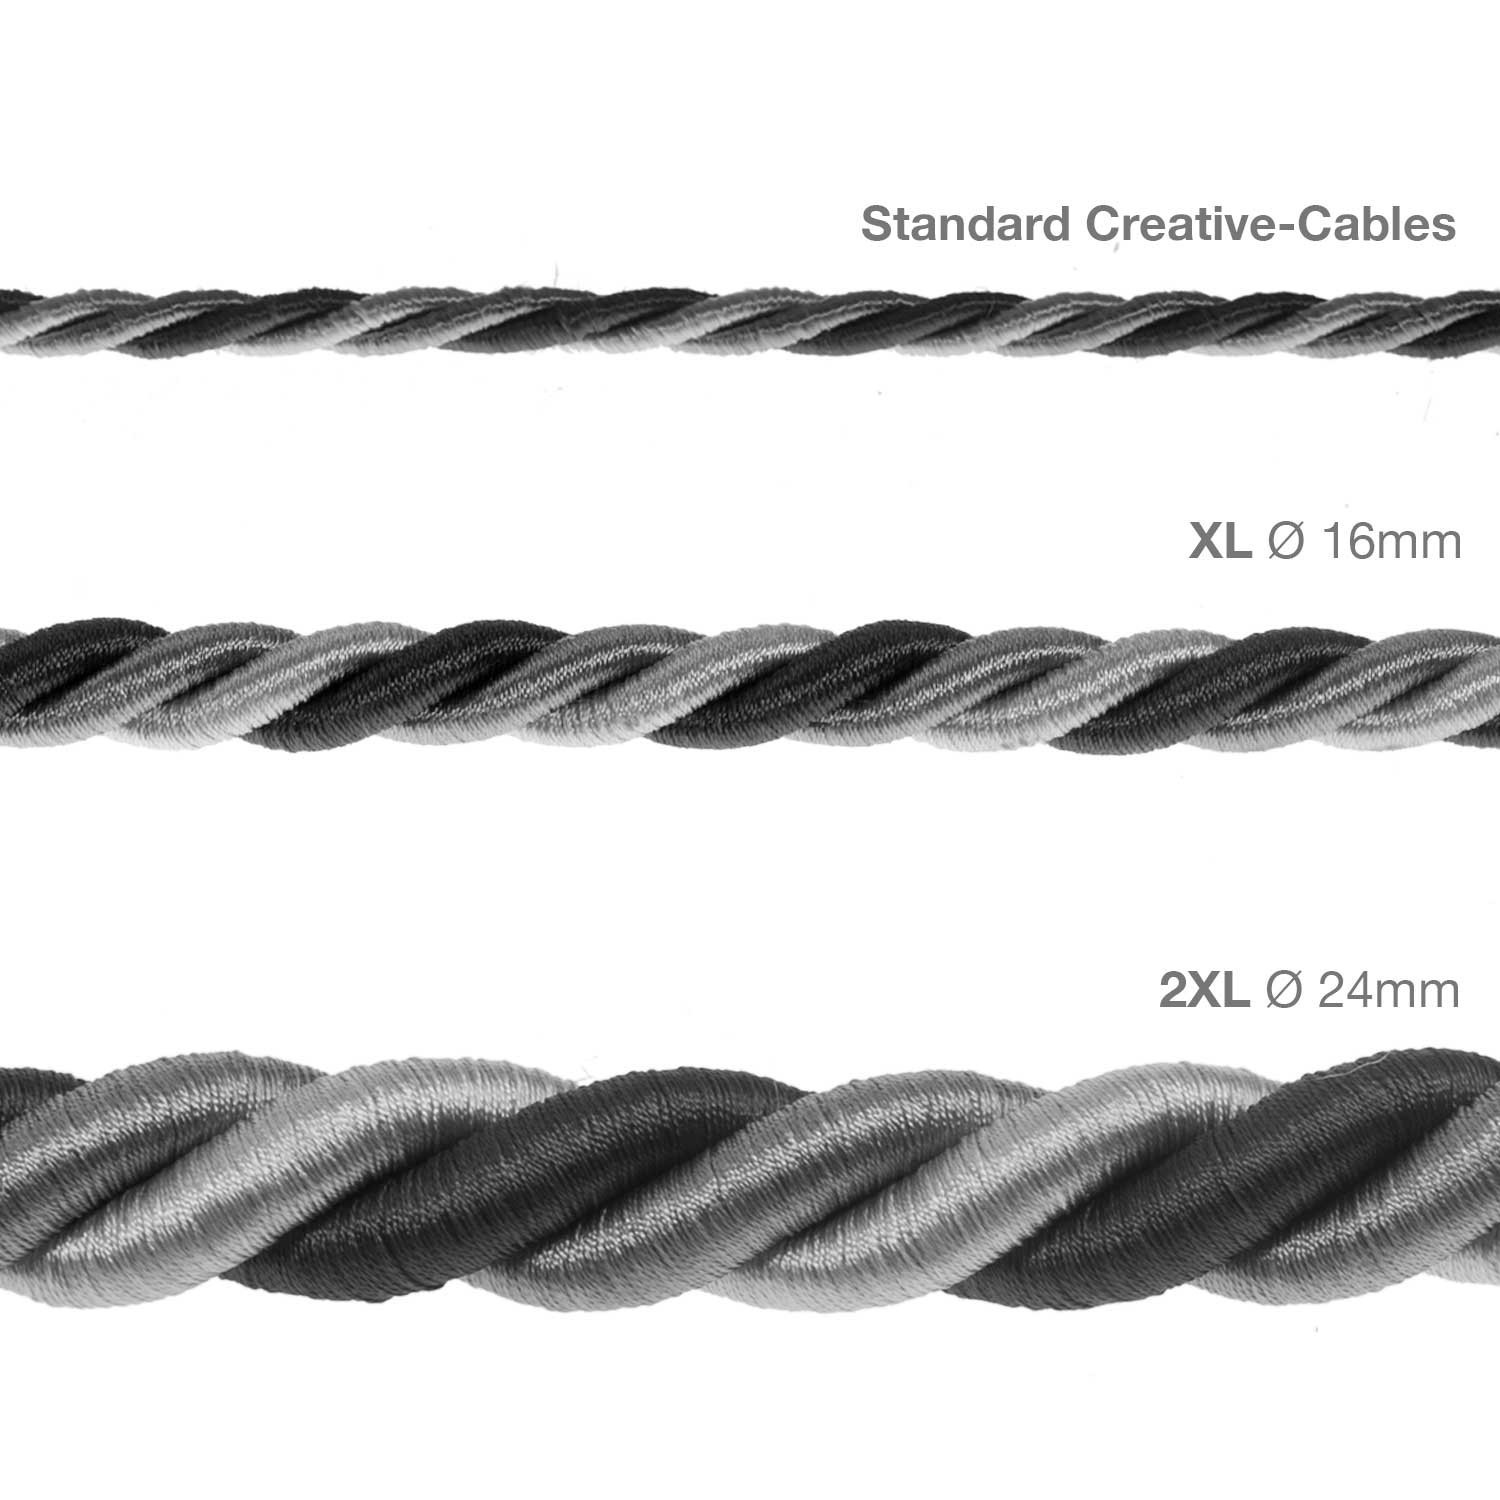 XL Elektrický kabel 3x0,75 potažený lesklou šedou hedvábní textilií Orleans. Průměr 16 mm.